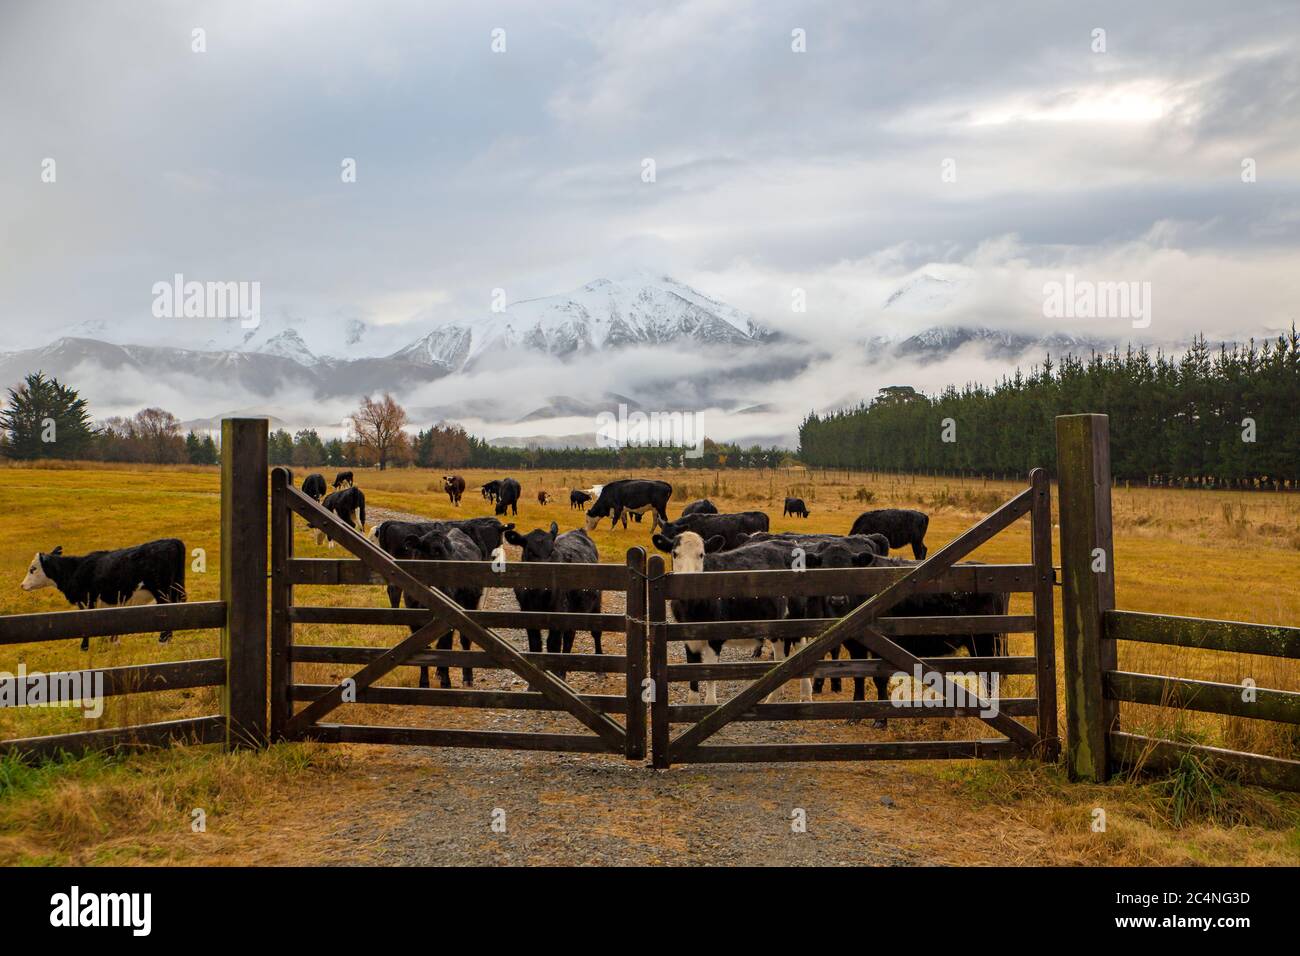 Une ferme pluvieuse d'hiver en Nouvelle-Zélande, avec des bovins derrière une porte de ferme en bois et des montagnes enneigées en arrière-plan Banque D'Images